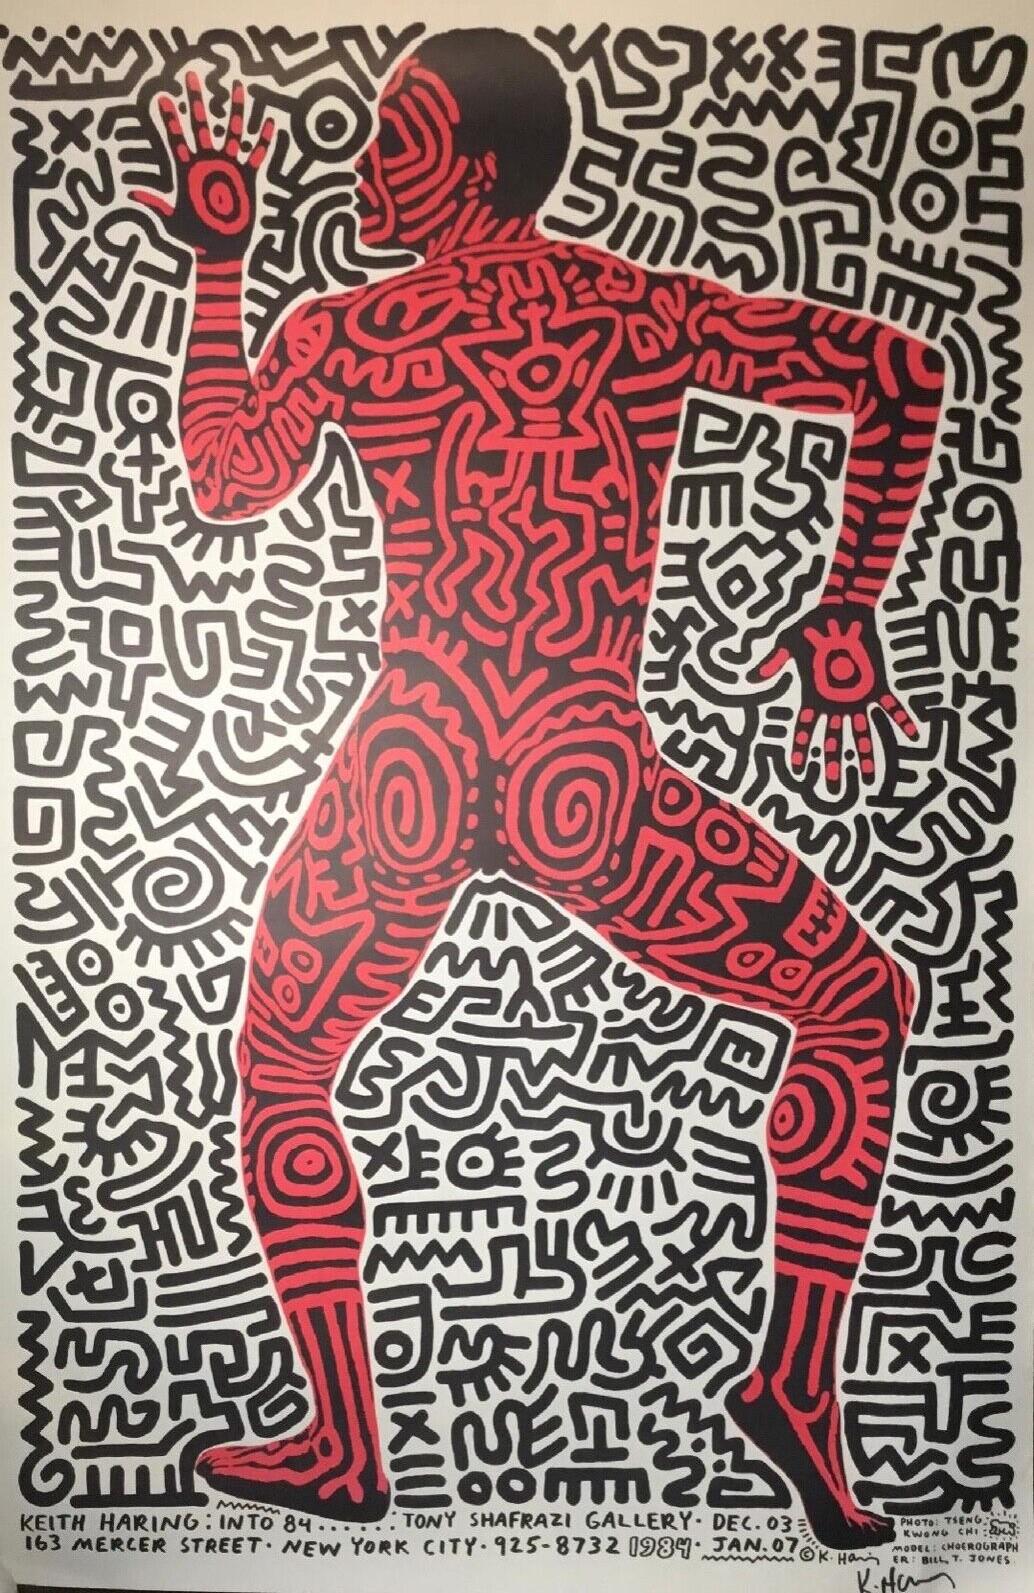 Eine fantastische, wunderbar gestaltete, auffallende Original-Farb-Offsetlithografie auf dickem Velinpapier Ausstellungsplakat von Keith Harings 1983 Tony Shafrazi New York City Gallery Show Into 84.  Das Werk zeigt den Körper des Choreografen und